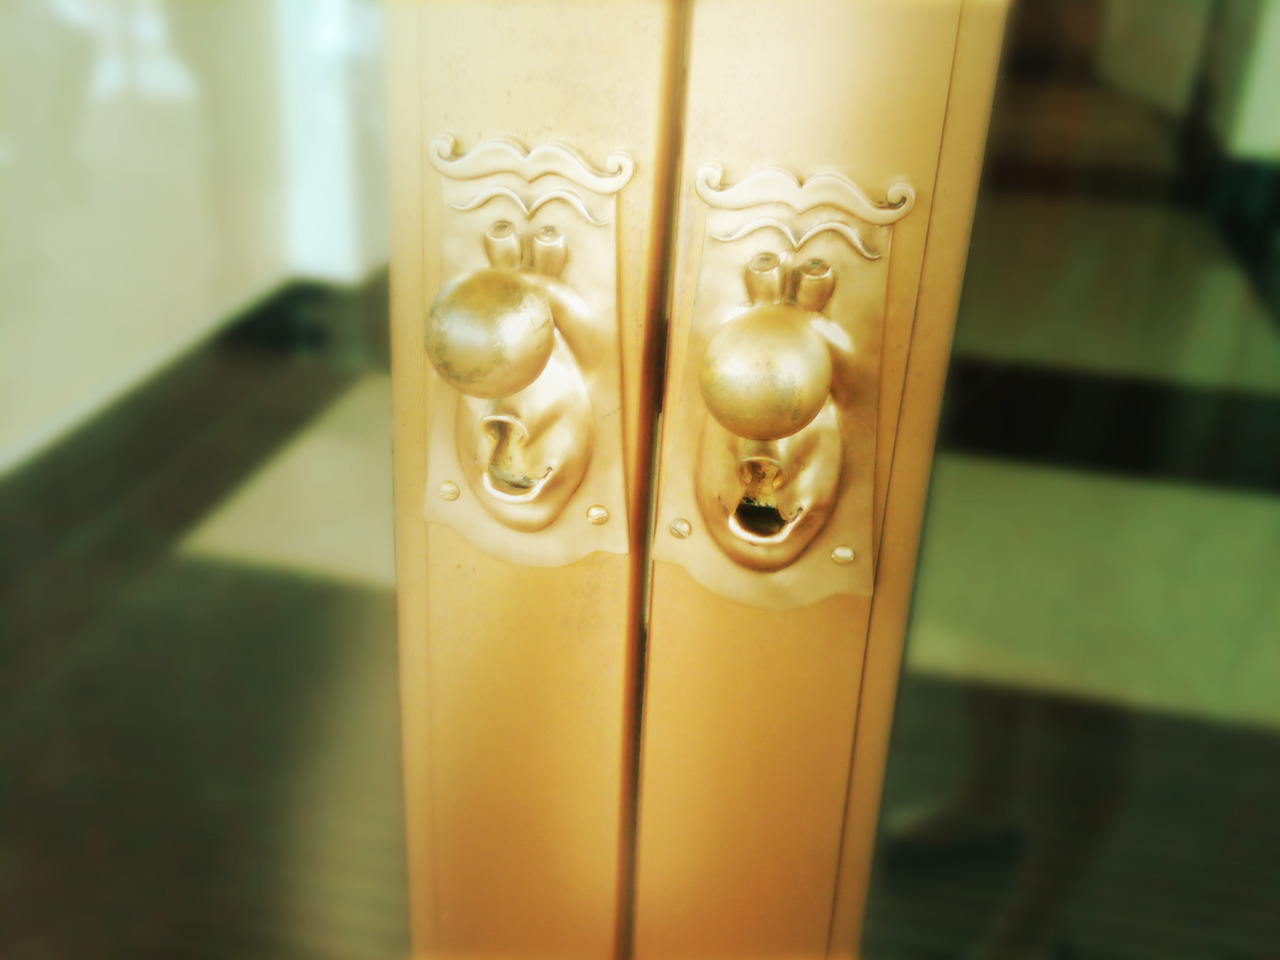 carouseloflauren:  Alice in Wonderland doorknobs at the Walt Disney World Casting